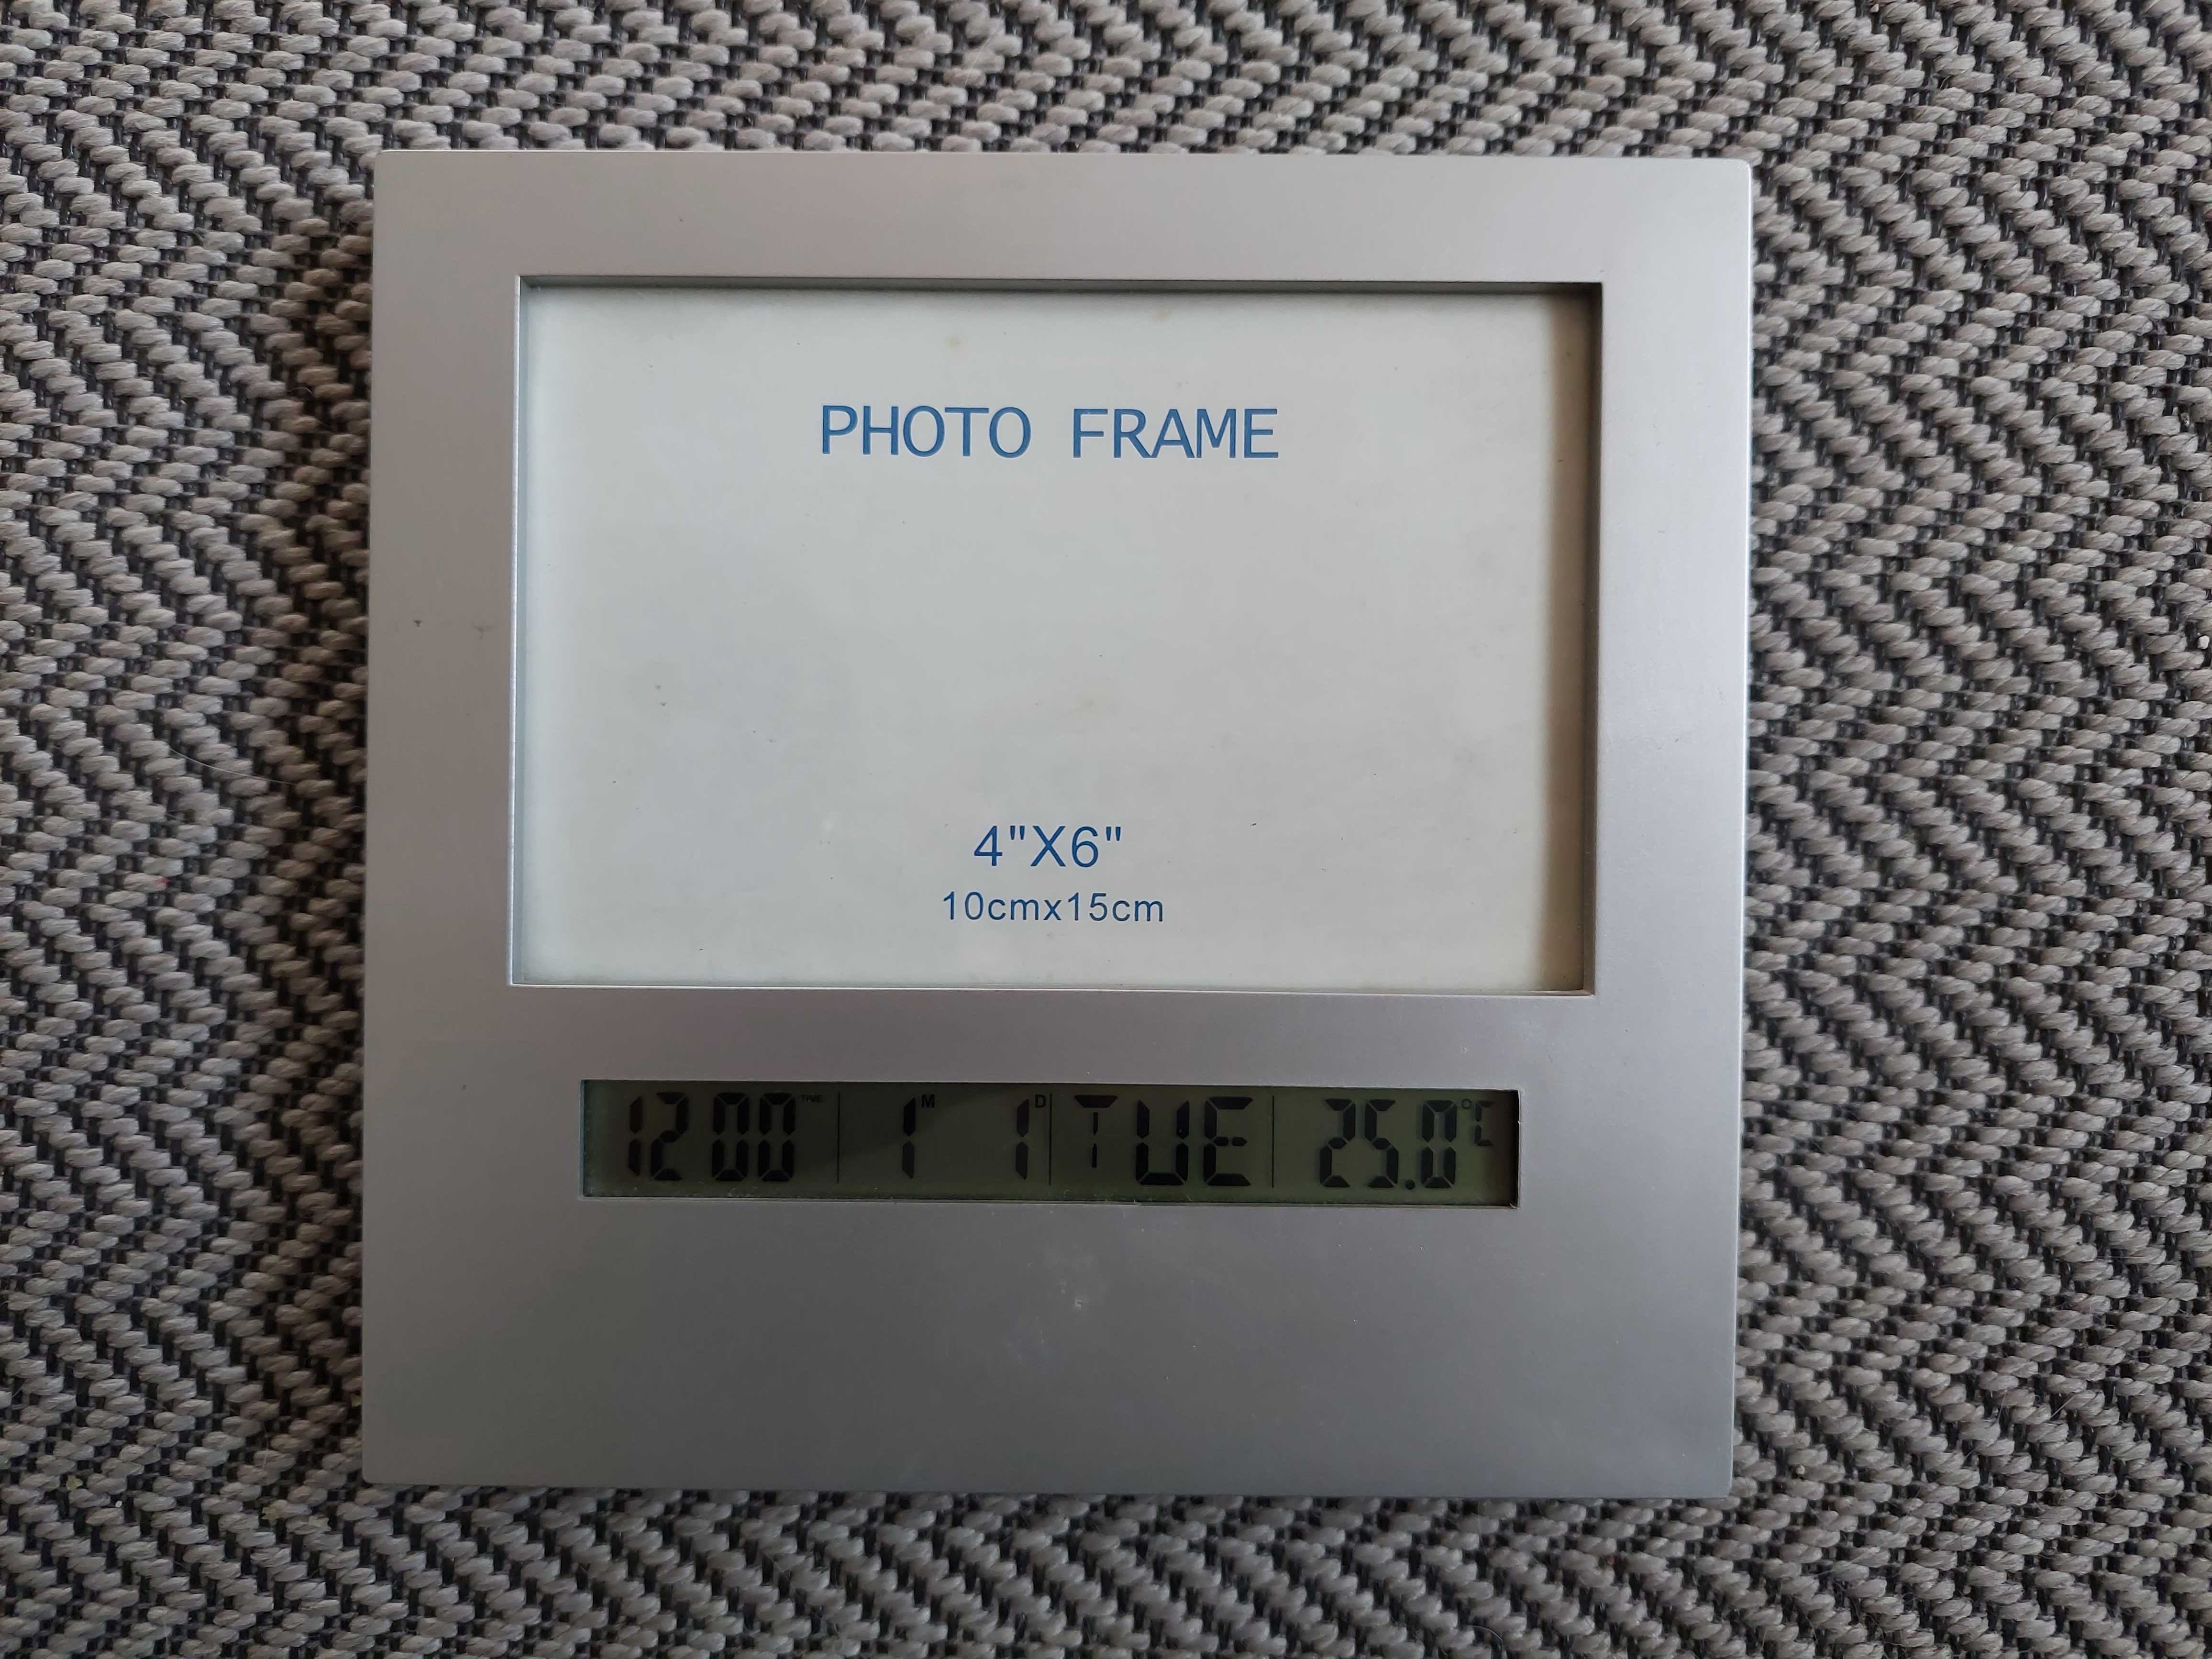 Moldura 15x10cm com relógio, calendário e termómetro